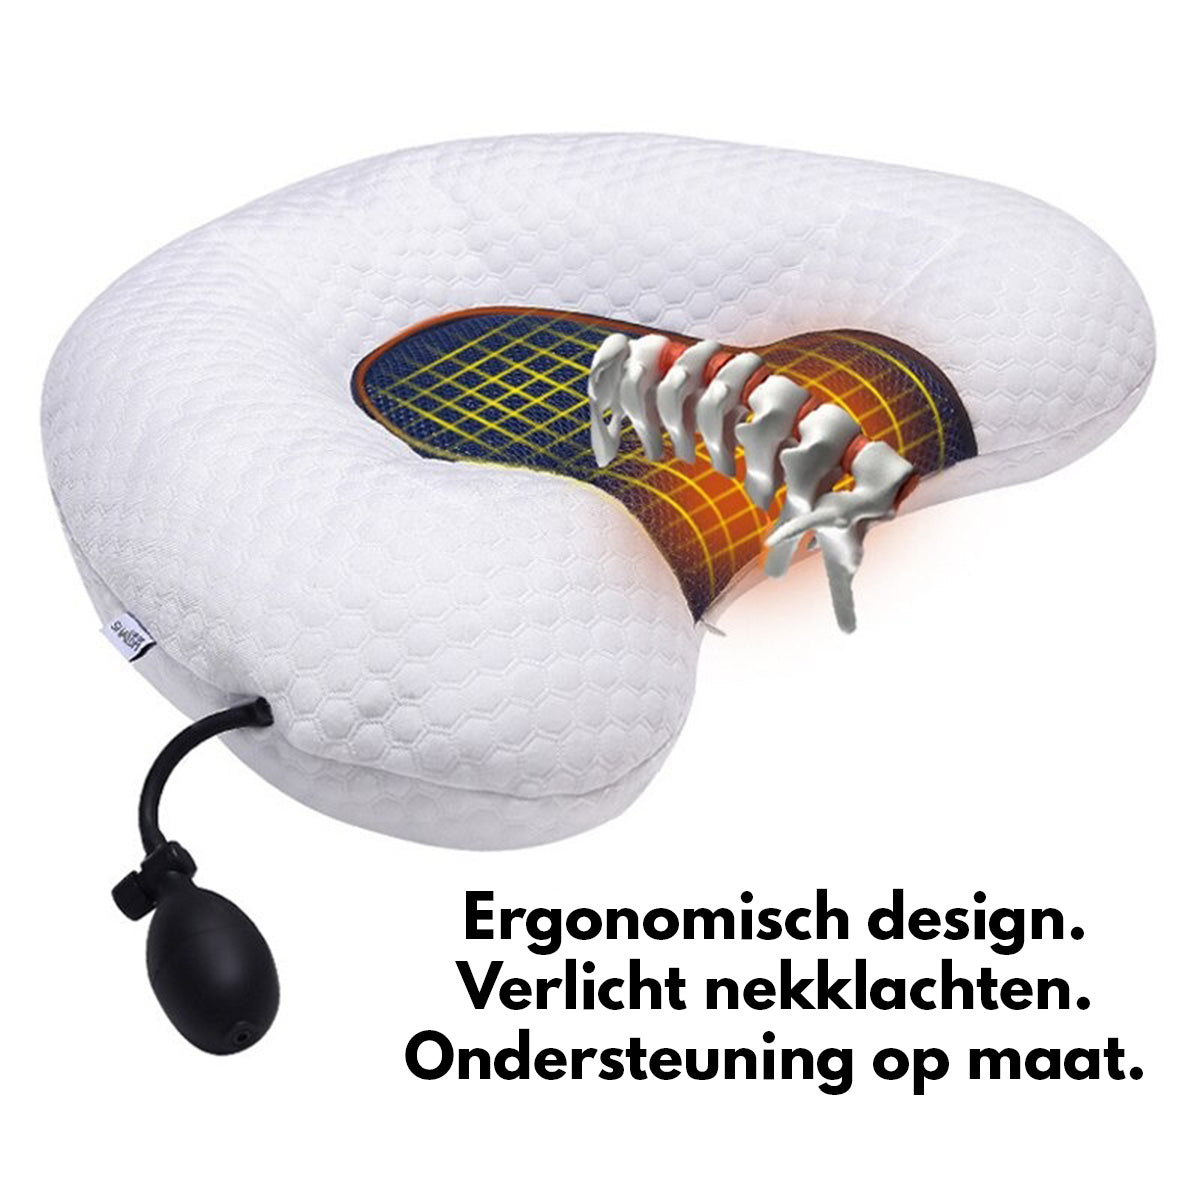 SMELOW™ Comfort Nekkussen | Met Surround Audiosysteem, Inflator & Verwarming!